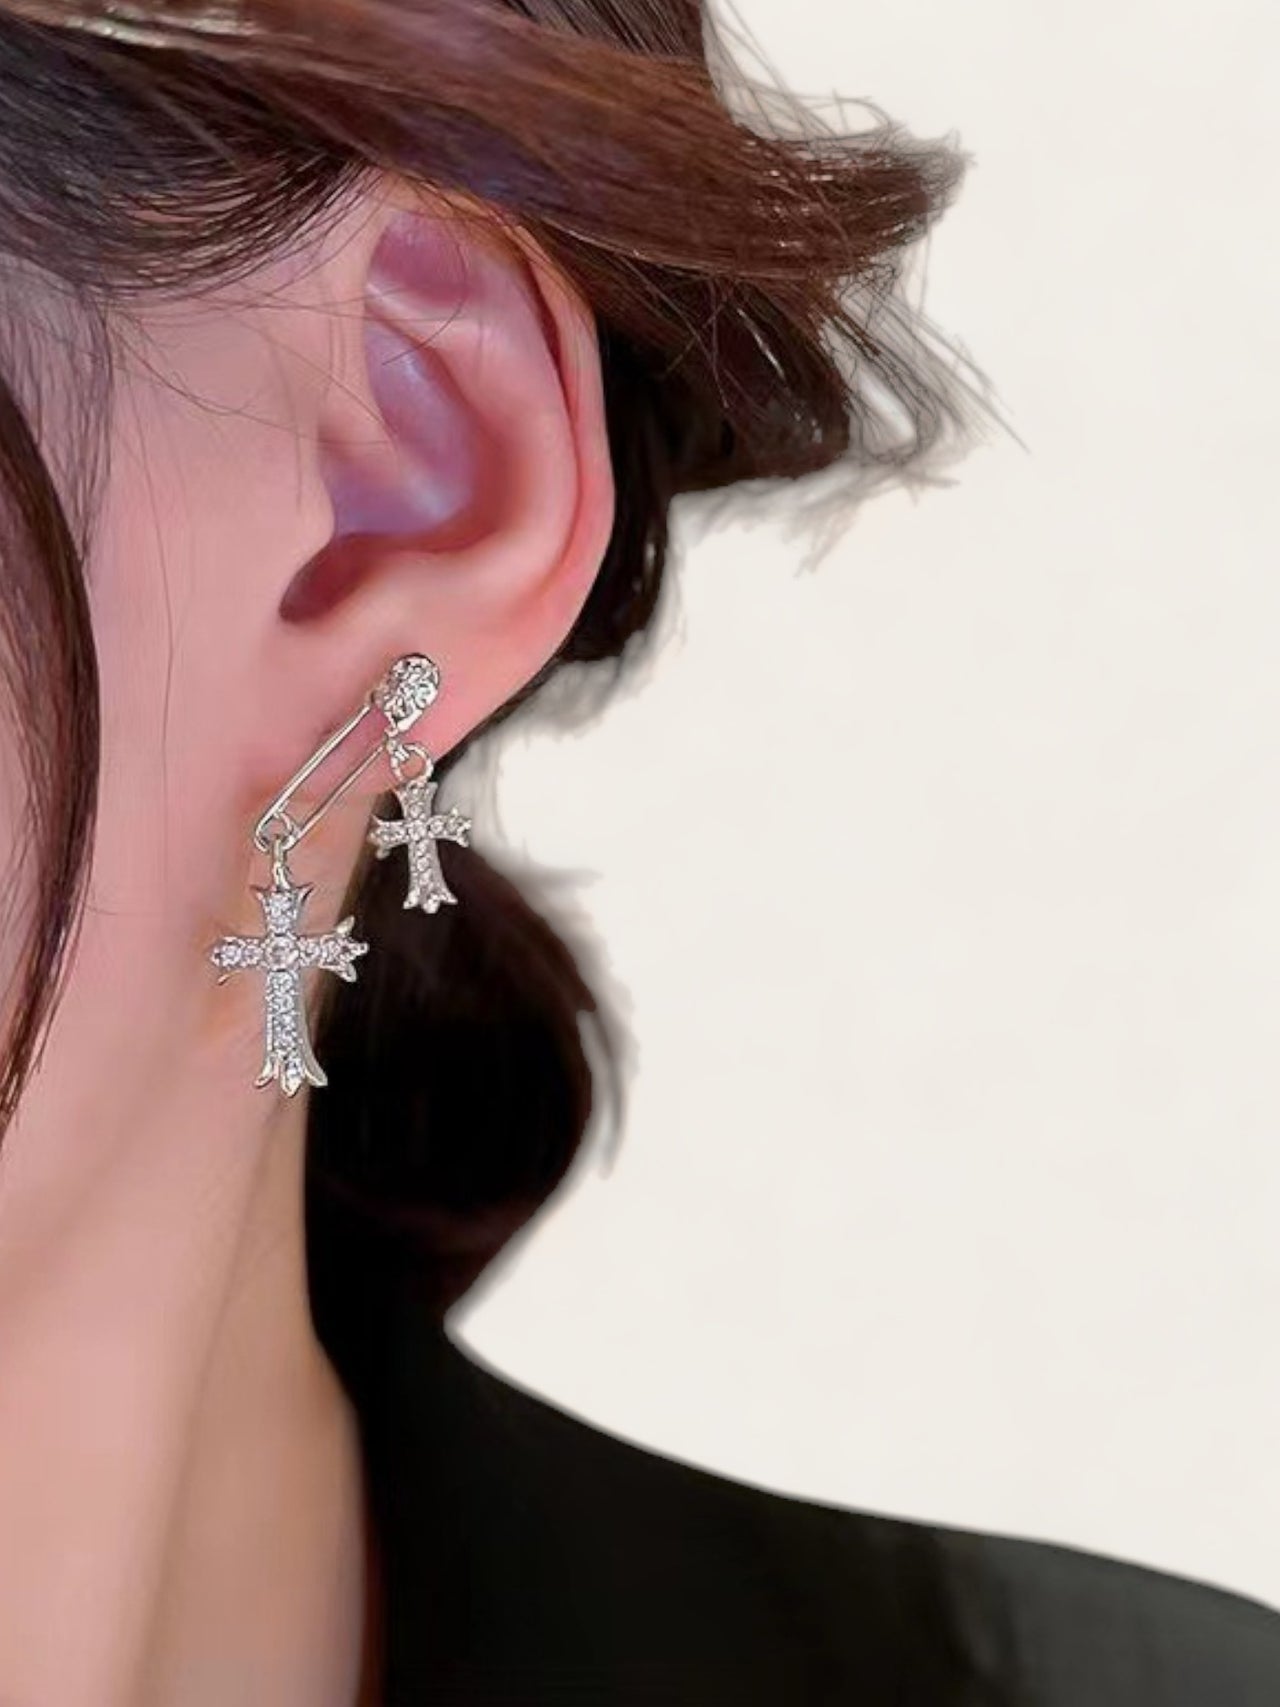 Silver Double Croix Earrings